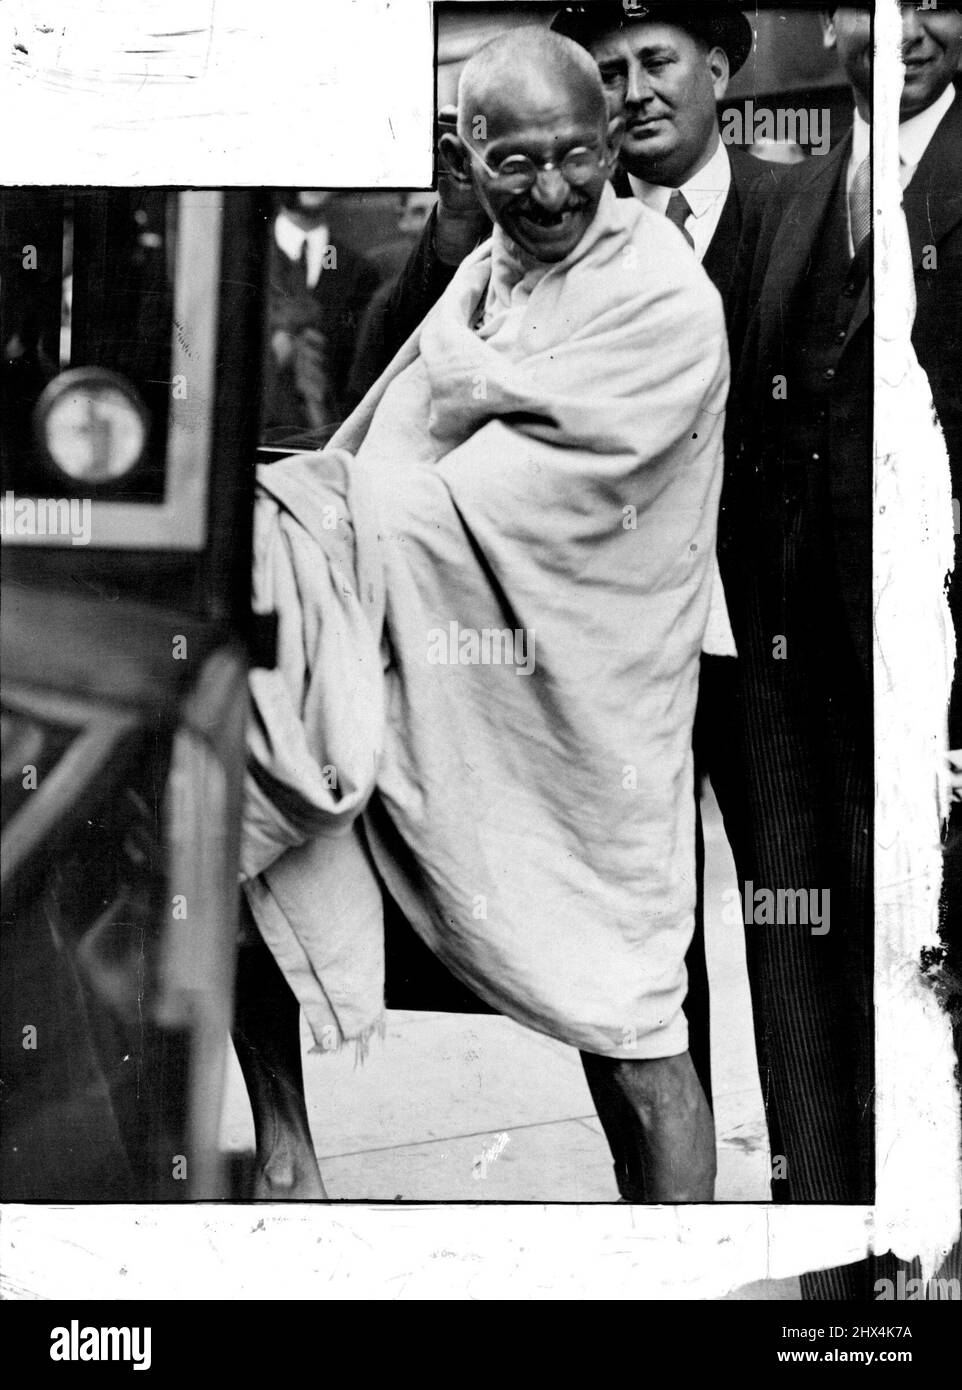 Das Lächeln der Freiheit! Gandhi verließ das Hotel nach seinem Interview mit Sir Samuel Hoare. 23. Oktober 1930. (Foto von Daily Mirror). Stockfoto